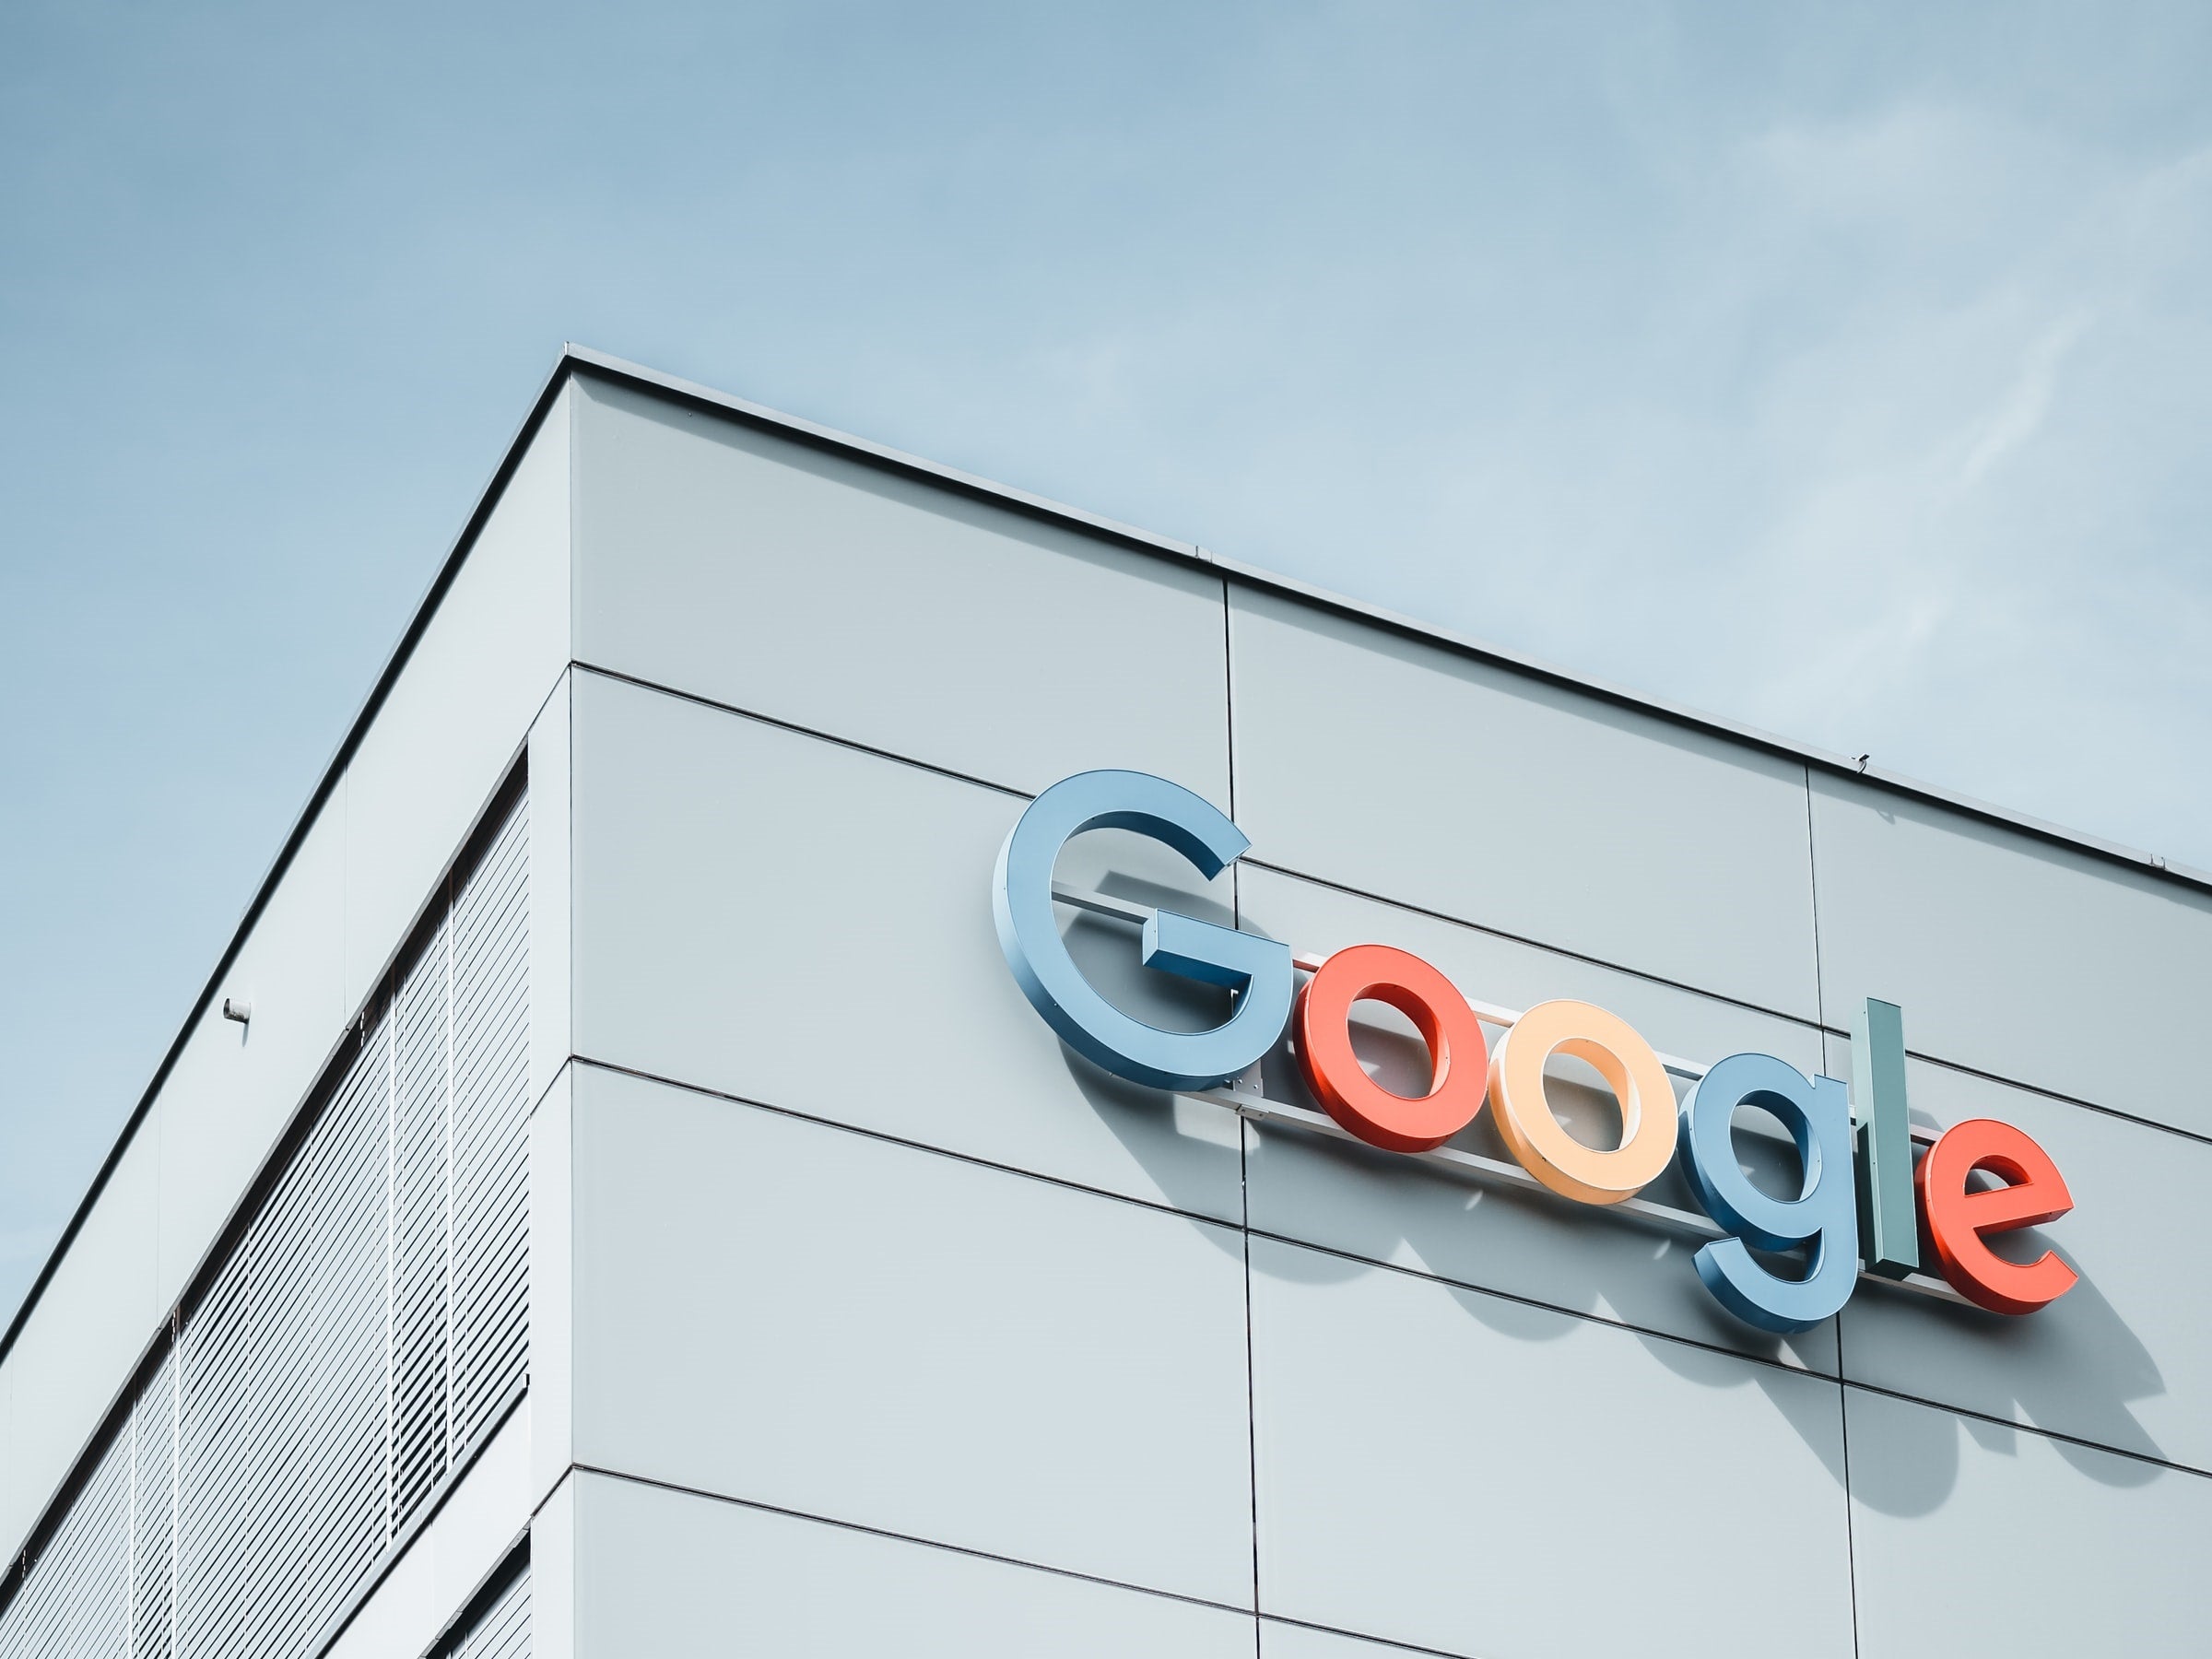 #Endlich: Google führt nach 150 Millionen Euro-Strafe unverhofftes Feature ein